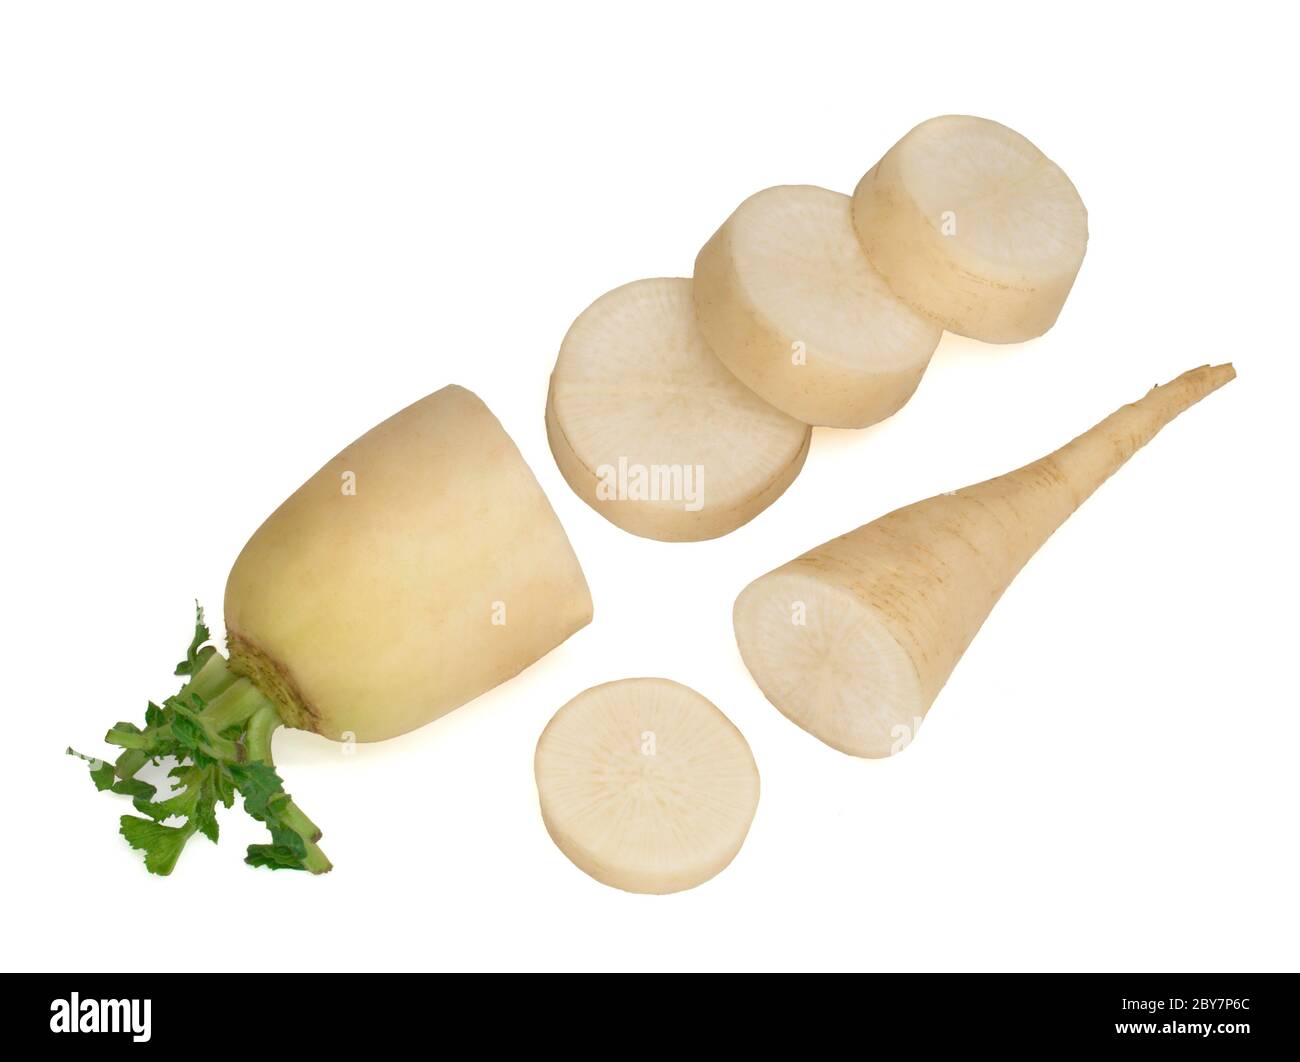 fresh daikon radish with slices isolated on white background Stock Photo